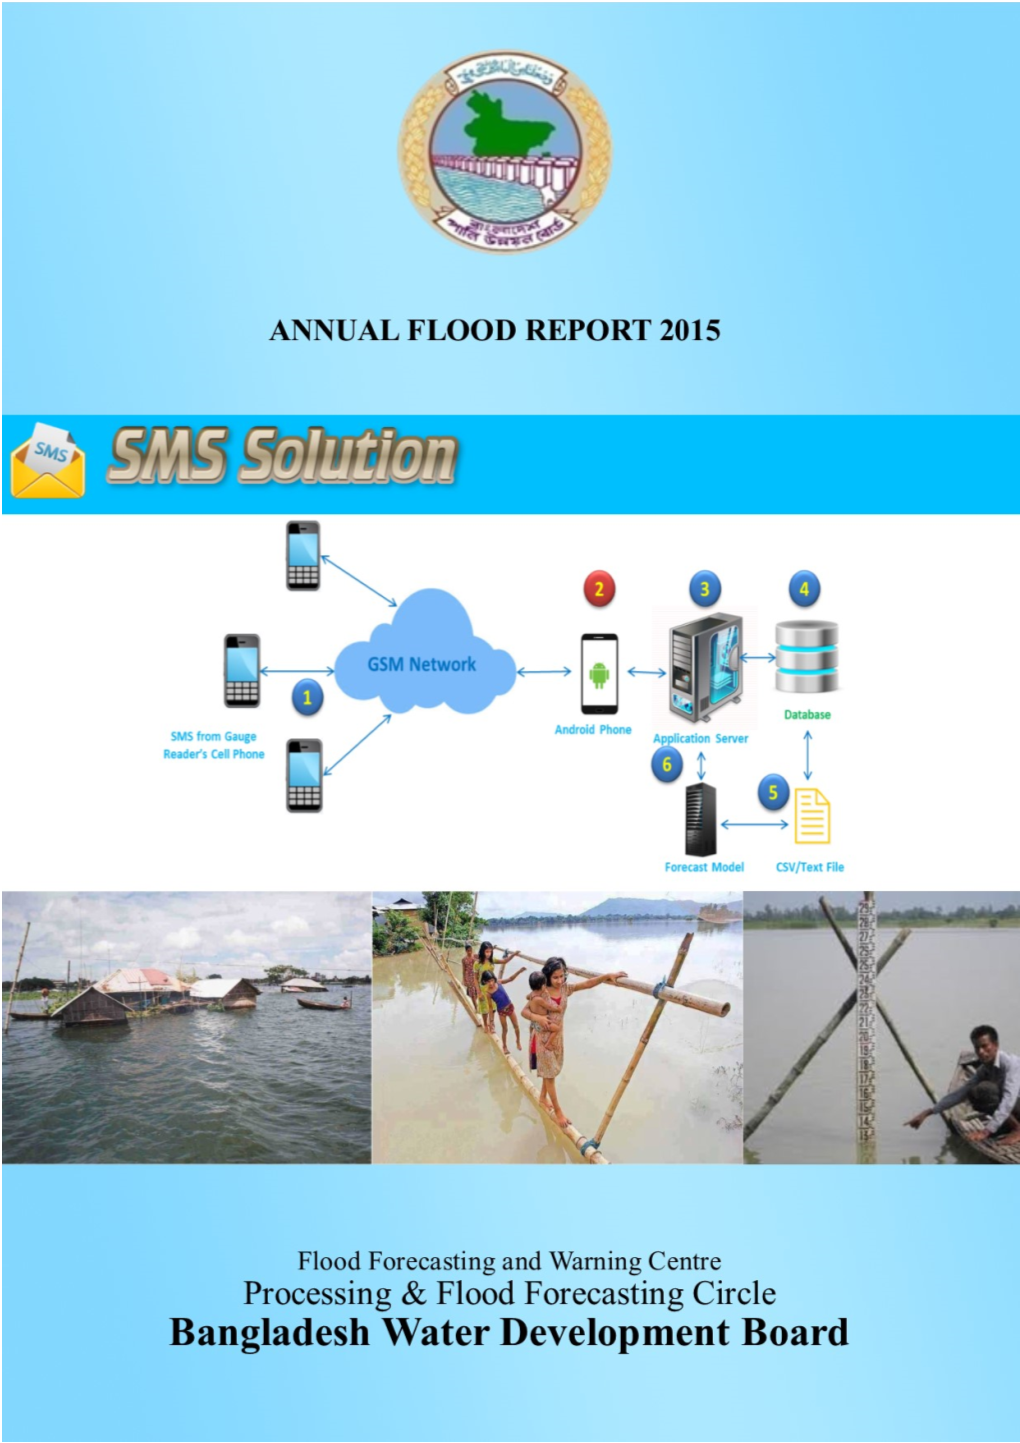 Annual Flood Report 2015, FFWC, BWDB I